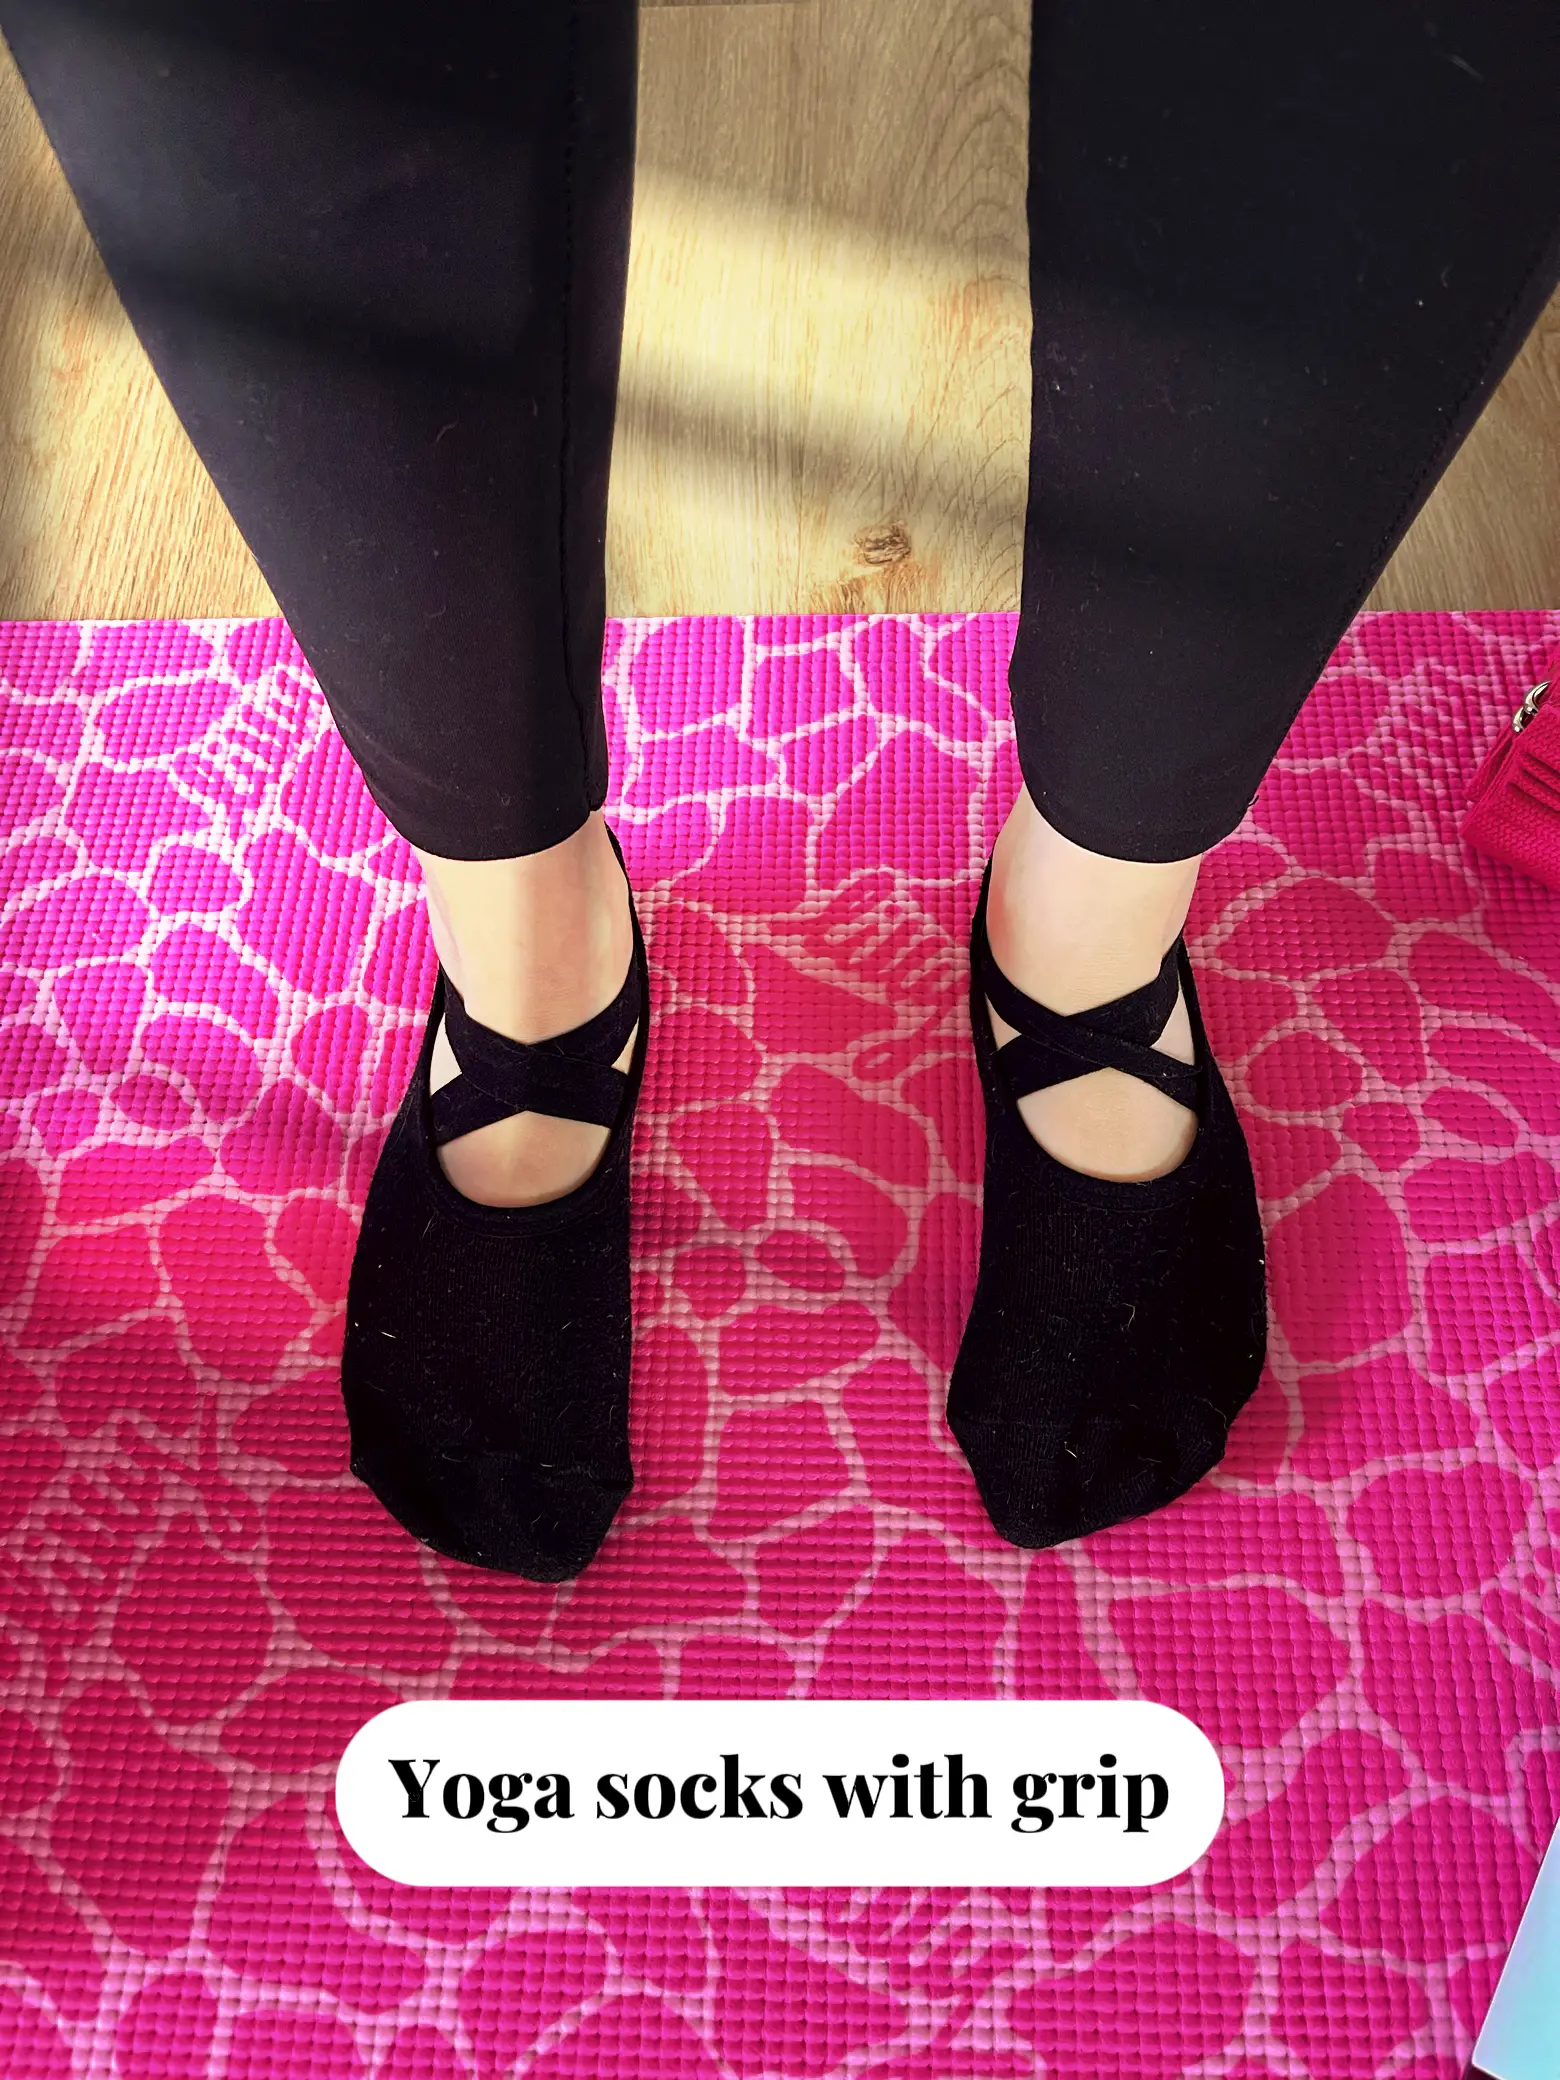 Grip Socks Yoga Socks with Grips for Women Non Slip, Pilates, Workout, Pure  Barre, Ballet, Dance, Hospital Socks